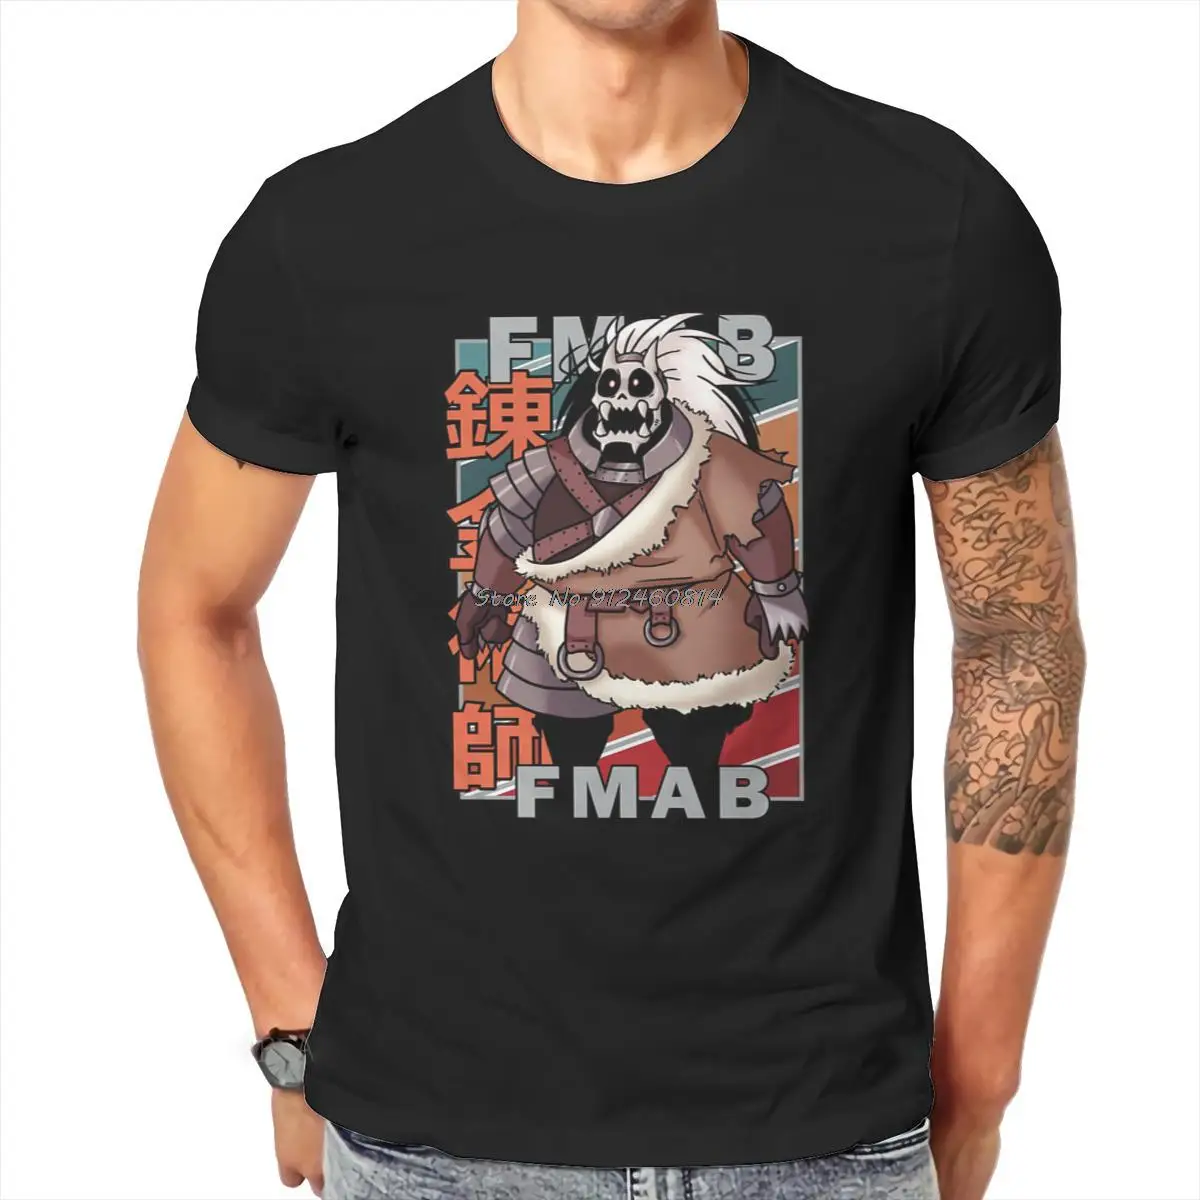 

Футболка аниме «Стальной Алхимик» Barry the Chopper, Классическая Альтернативная Высококачественная футболка, Большие футболки, мужская одежда